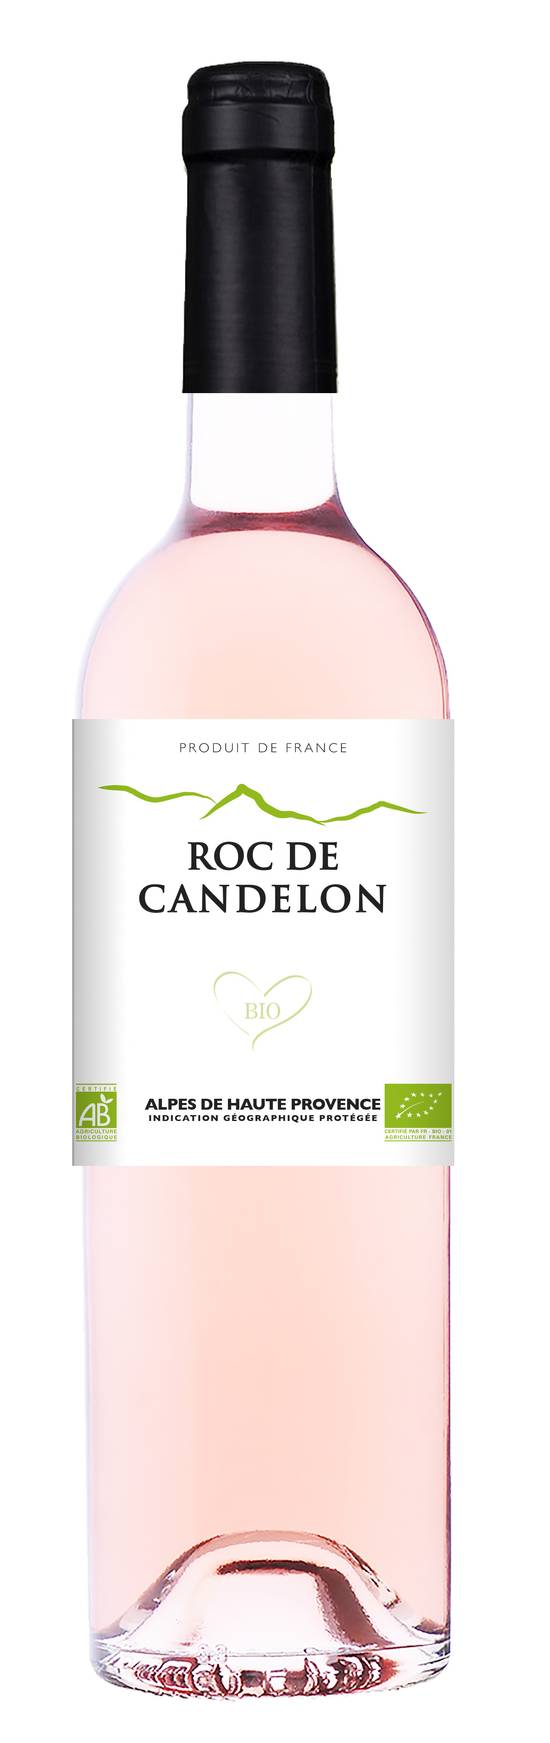 Roc de Candelon - Alpes de haute Provence IGP rose bio domestique wine (25.36 fl oz)